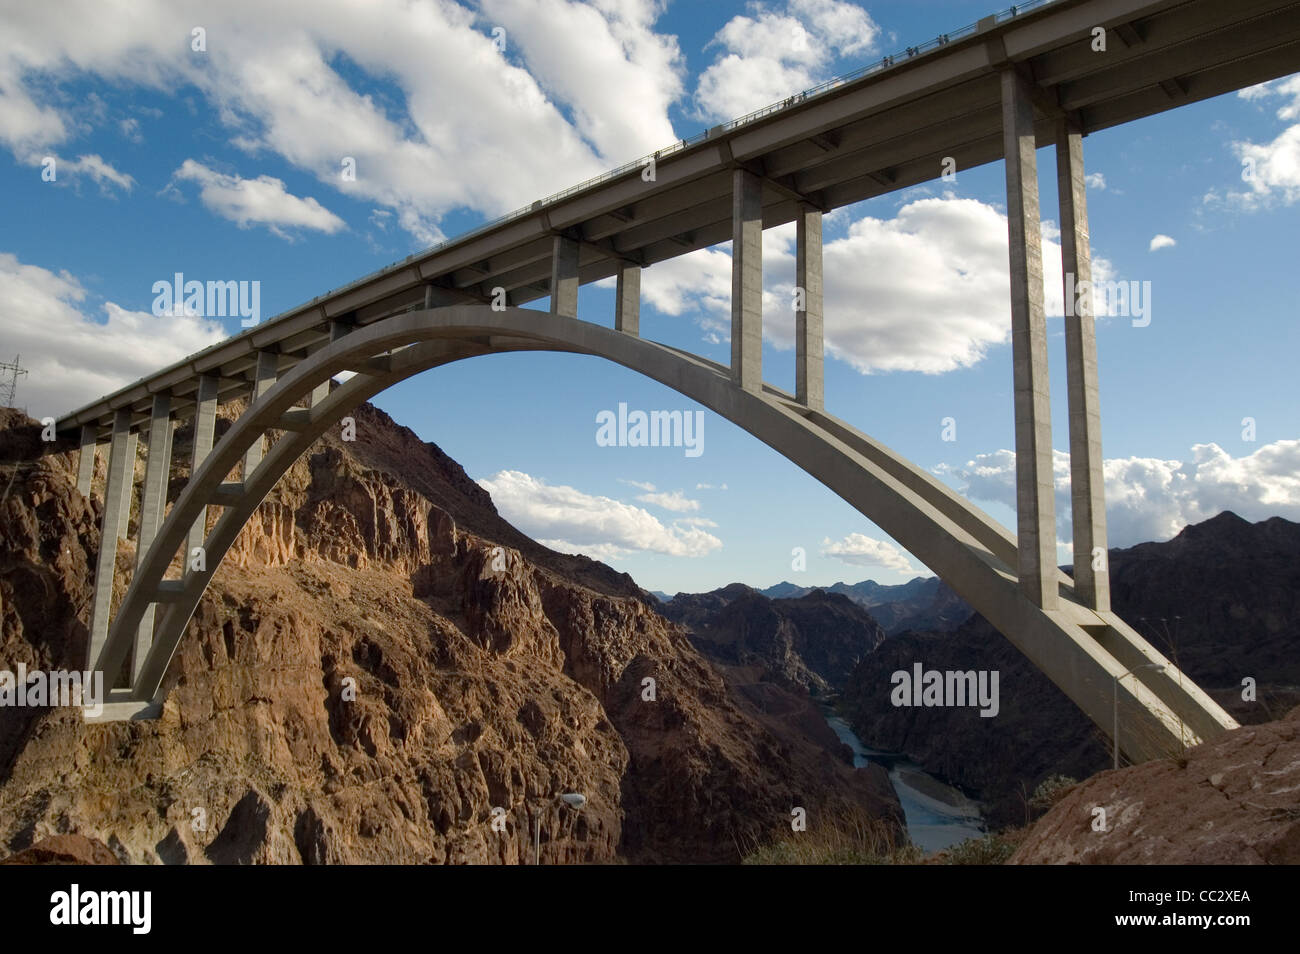 Puente maldito Hoover de Nevada, EE.UU.. Un buen ejemplo de puente de la ingeniería y la arquitectura. Adoptado el 8 de noviembre de 2010. Foto de stock